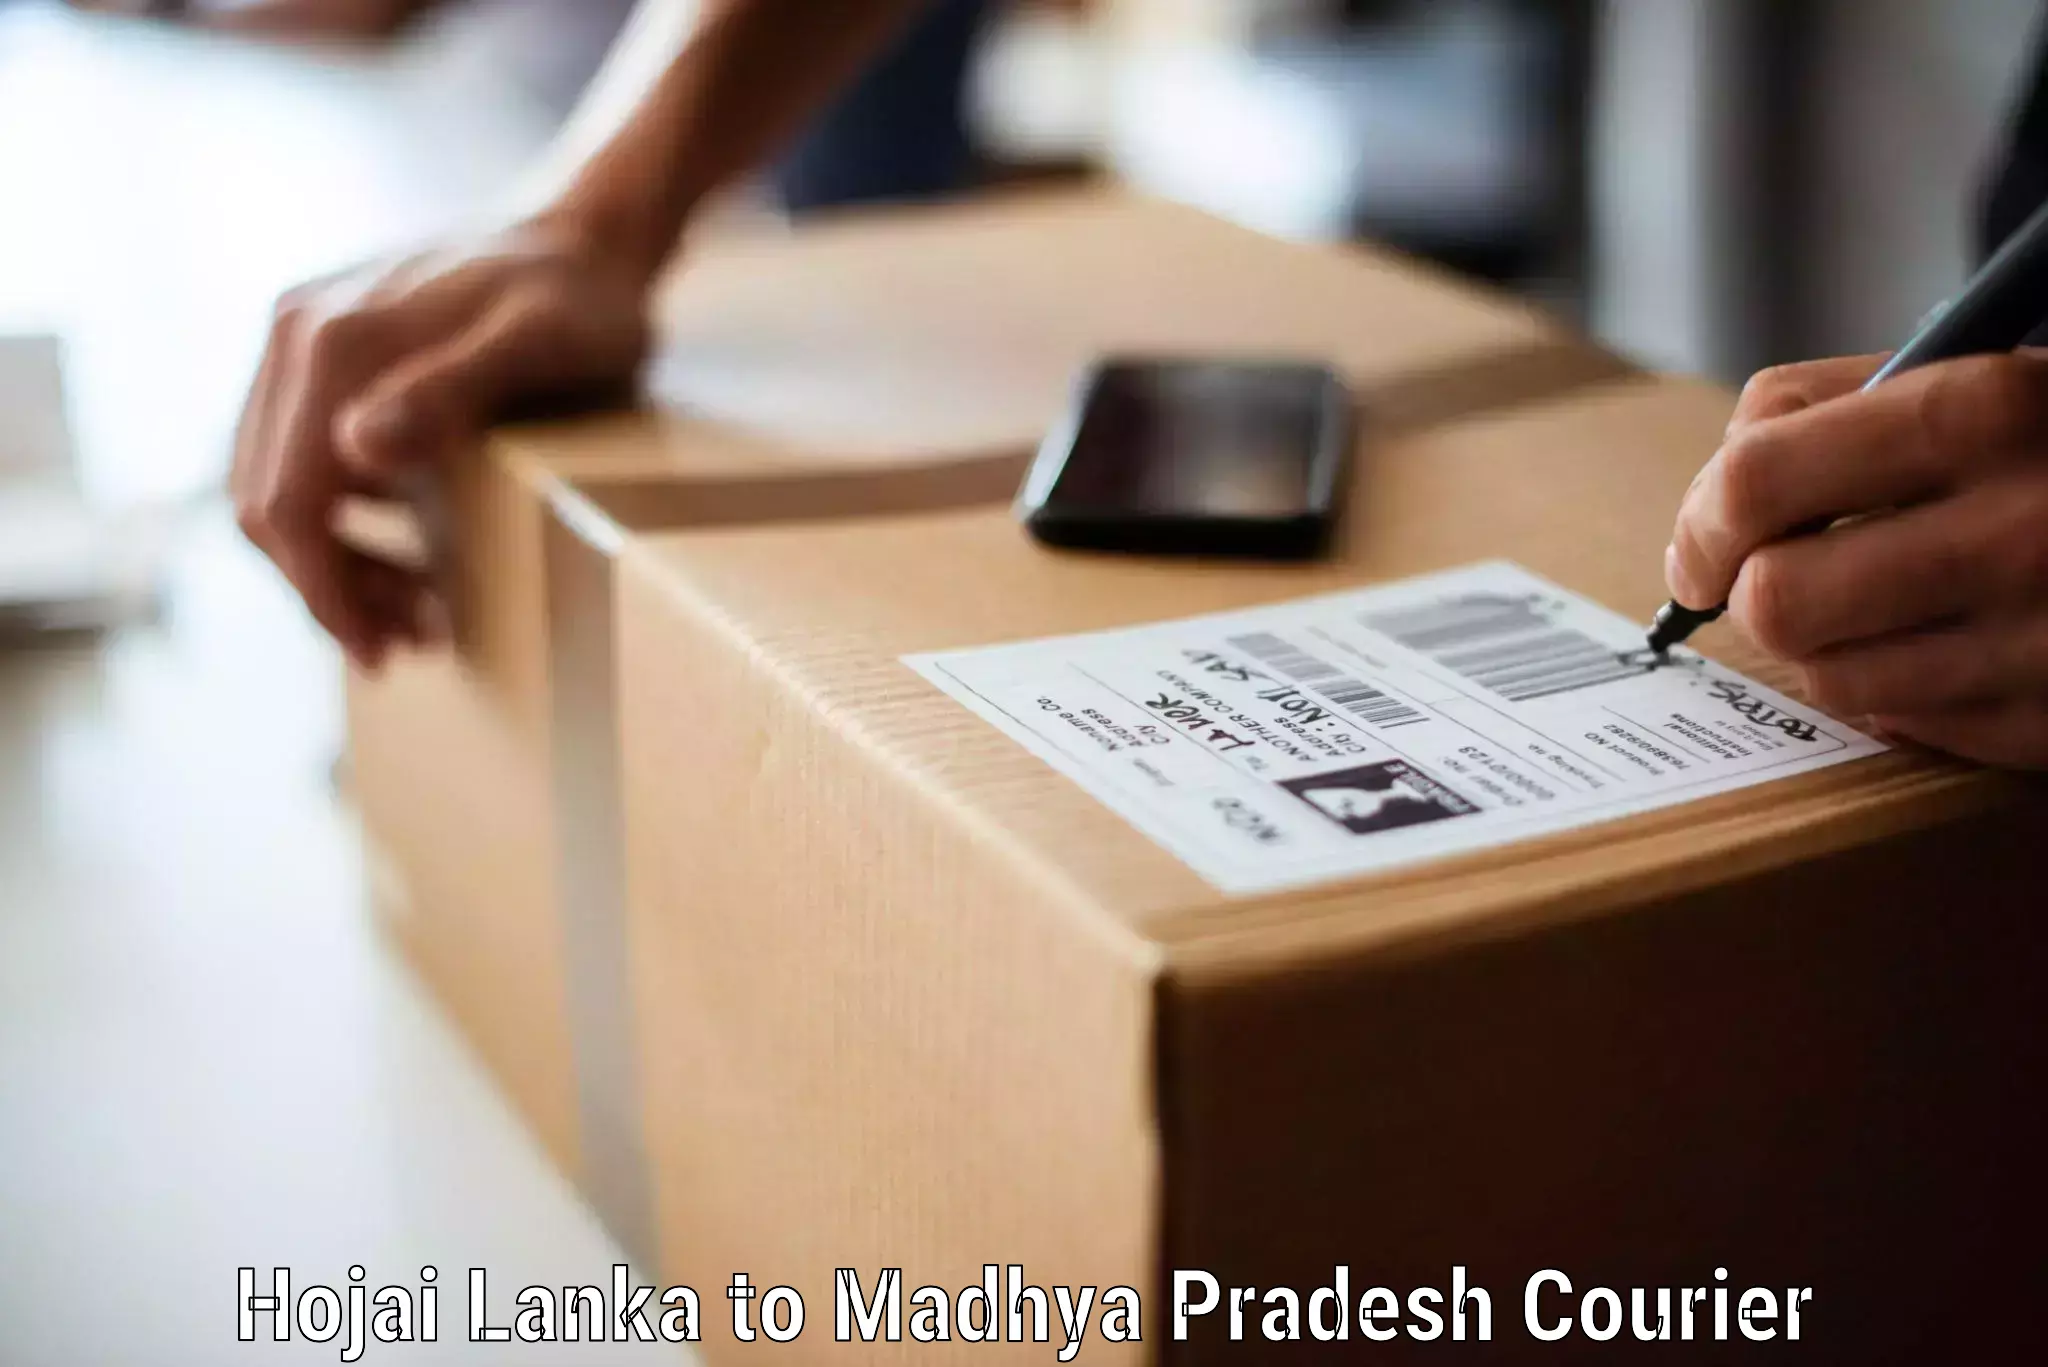 Furniture moving plans in Hojai Lanka to Maheshwar